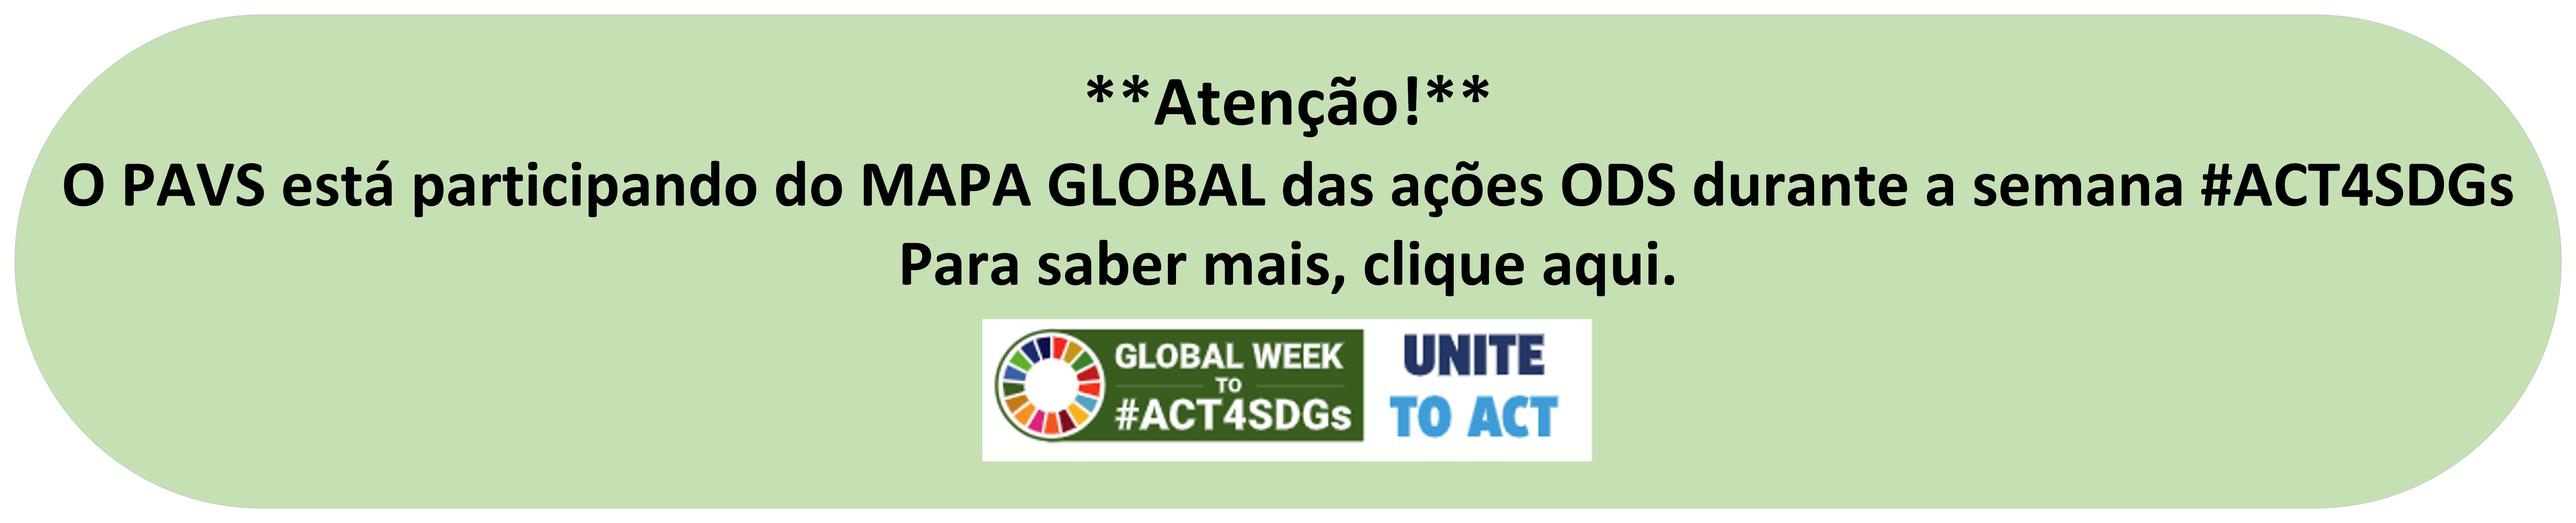 O aviso tem um fundo verde claro com a mensagem "O PAVS está participando do MAPA GLOBAL das ações ODS durante a semana" e em seguida ""Para saber mais, clique aqui."